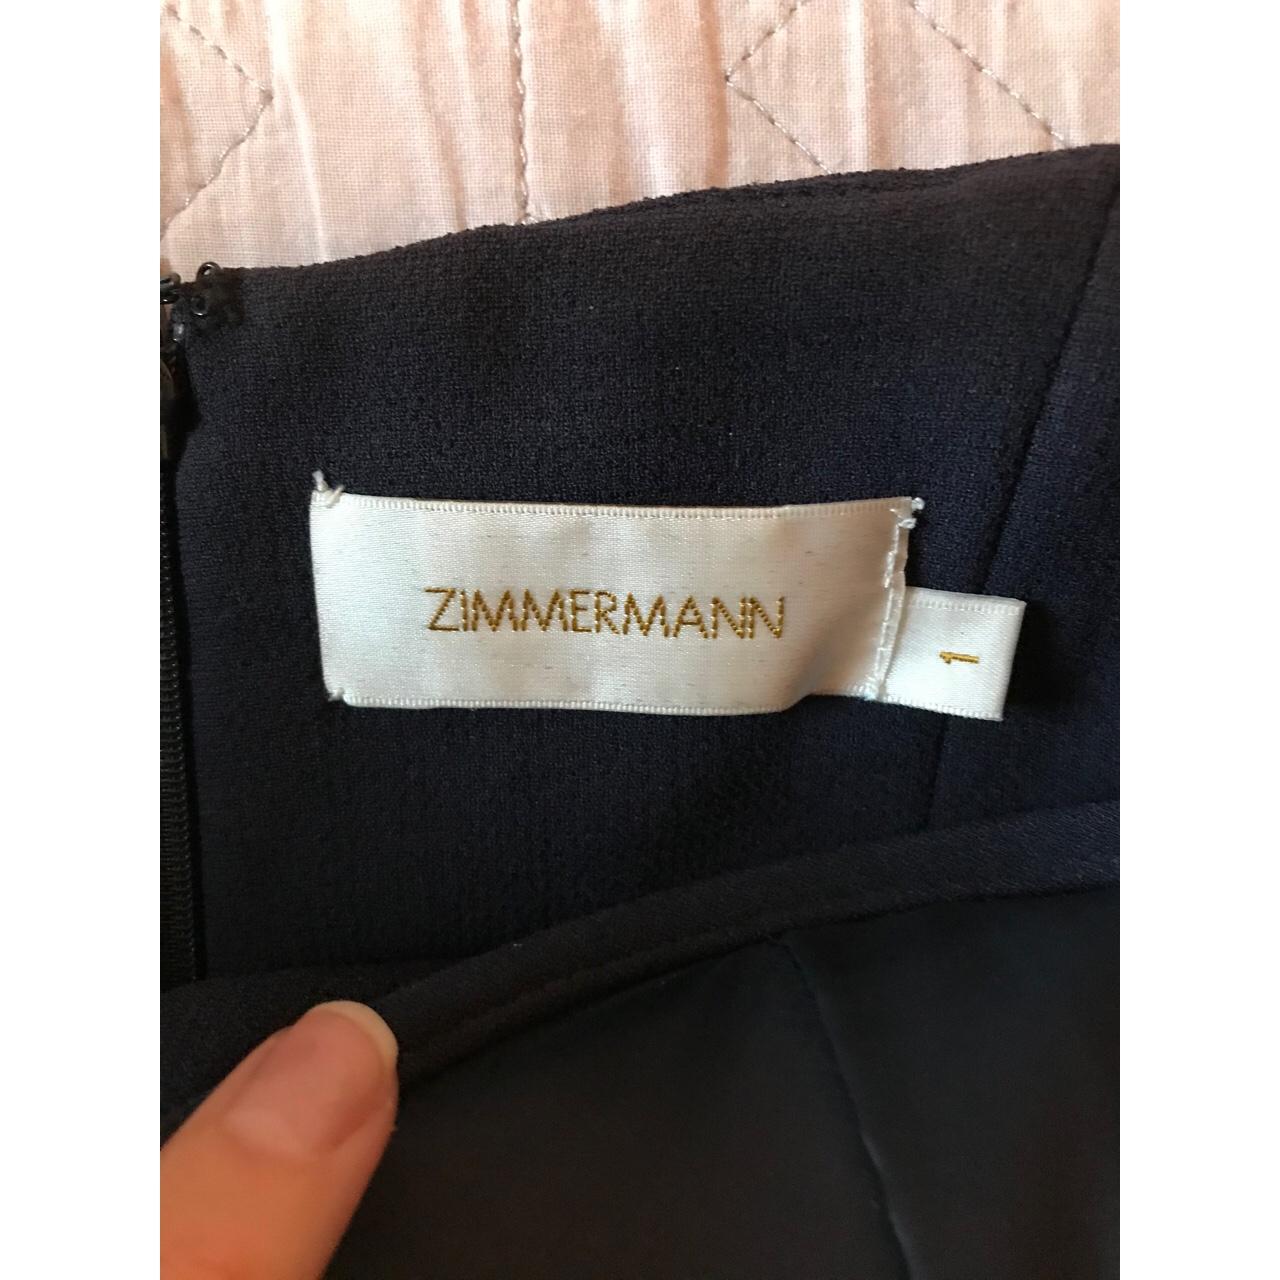 Zimmermann Navy Tarot Crepe Dress, Size 1. Excellent... - Depop